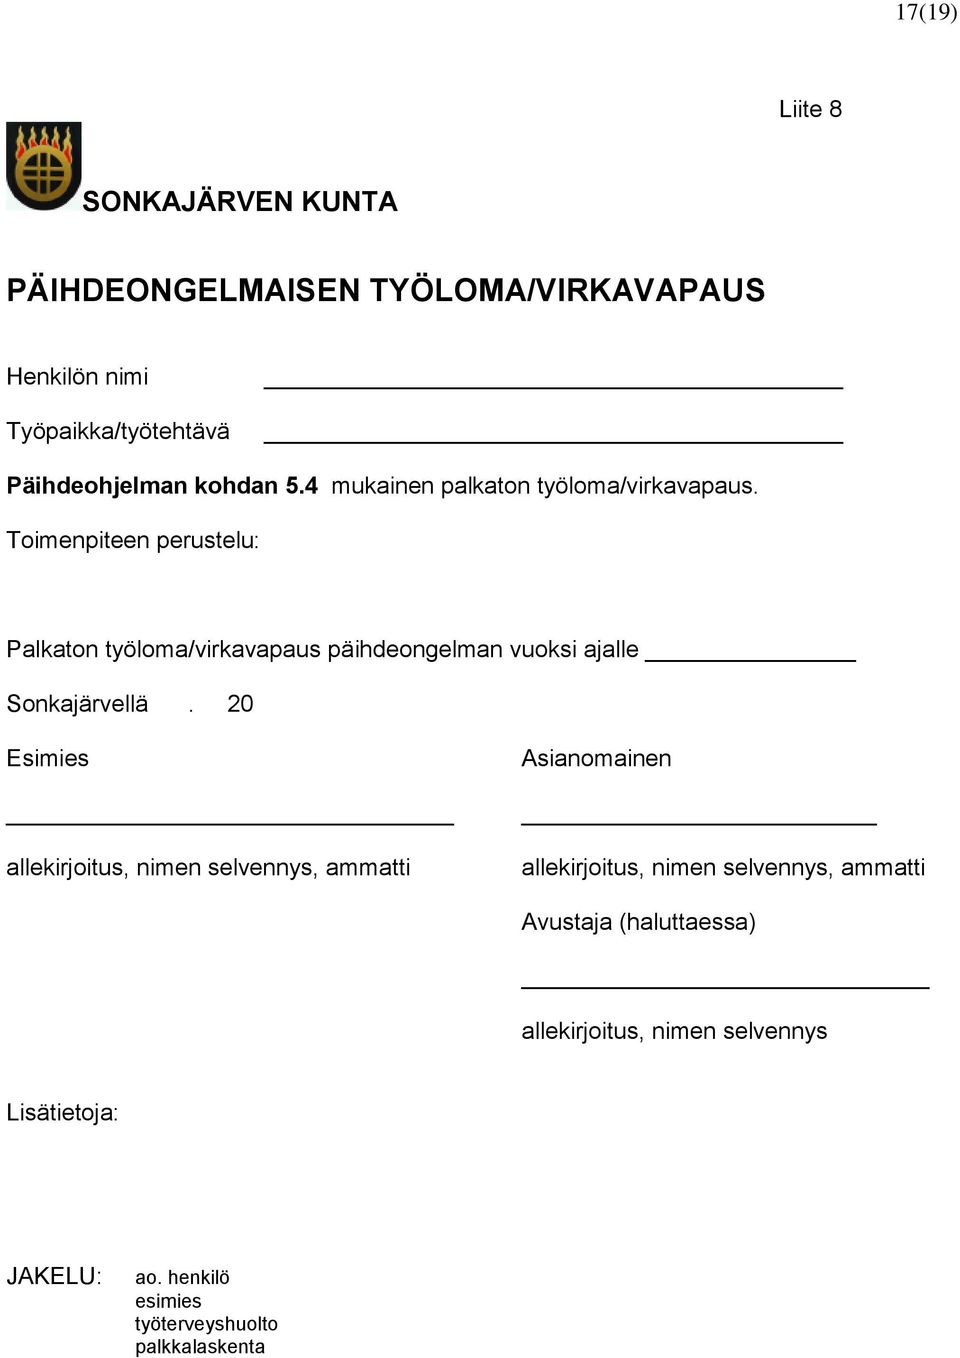 Toimenpiteen perustelu: Palkaton työloma/virkavapaus päihdeongelman vuoksi ajalle Sonkajärvellä.